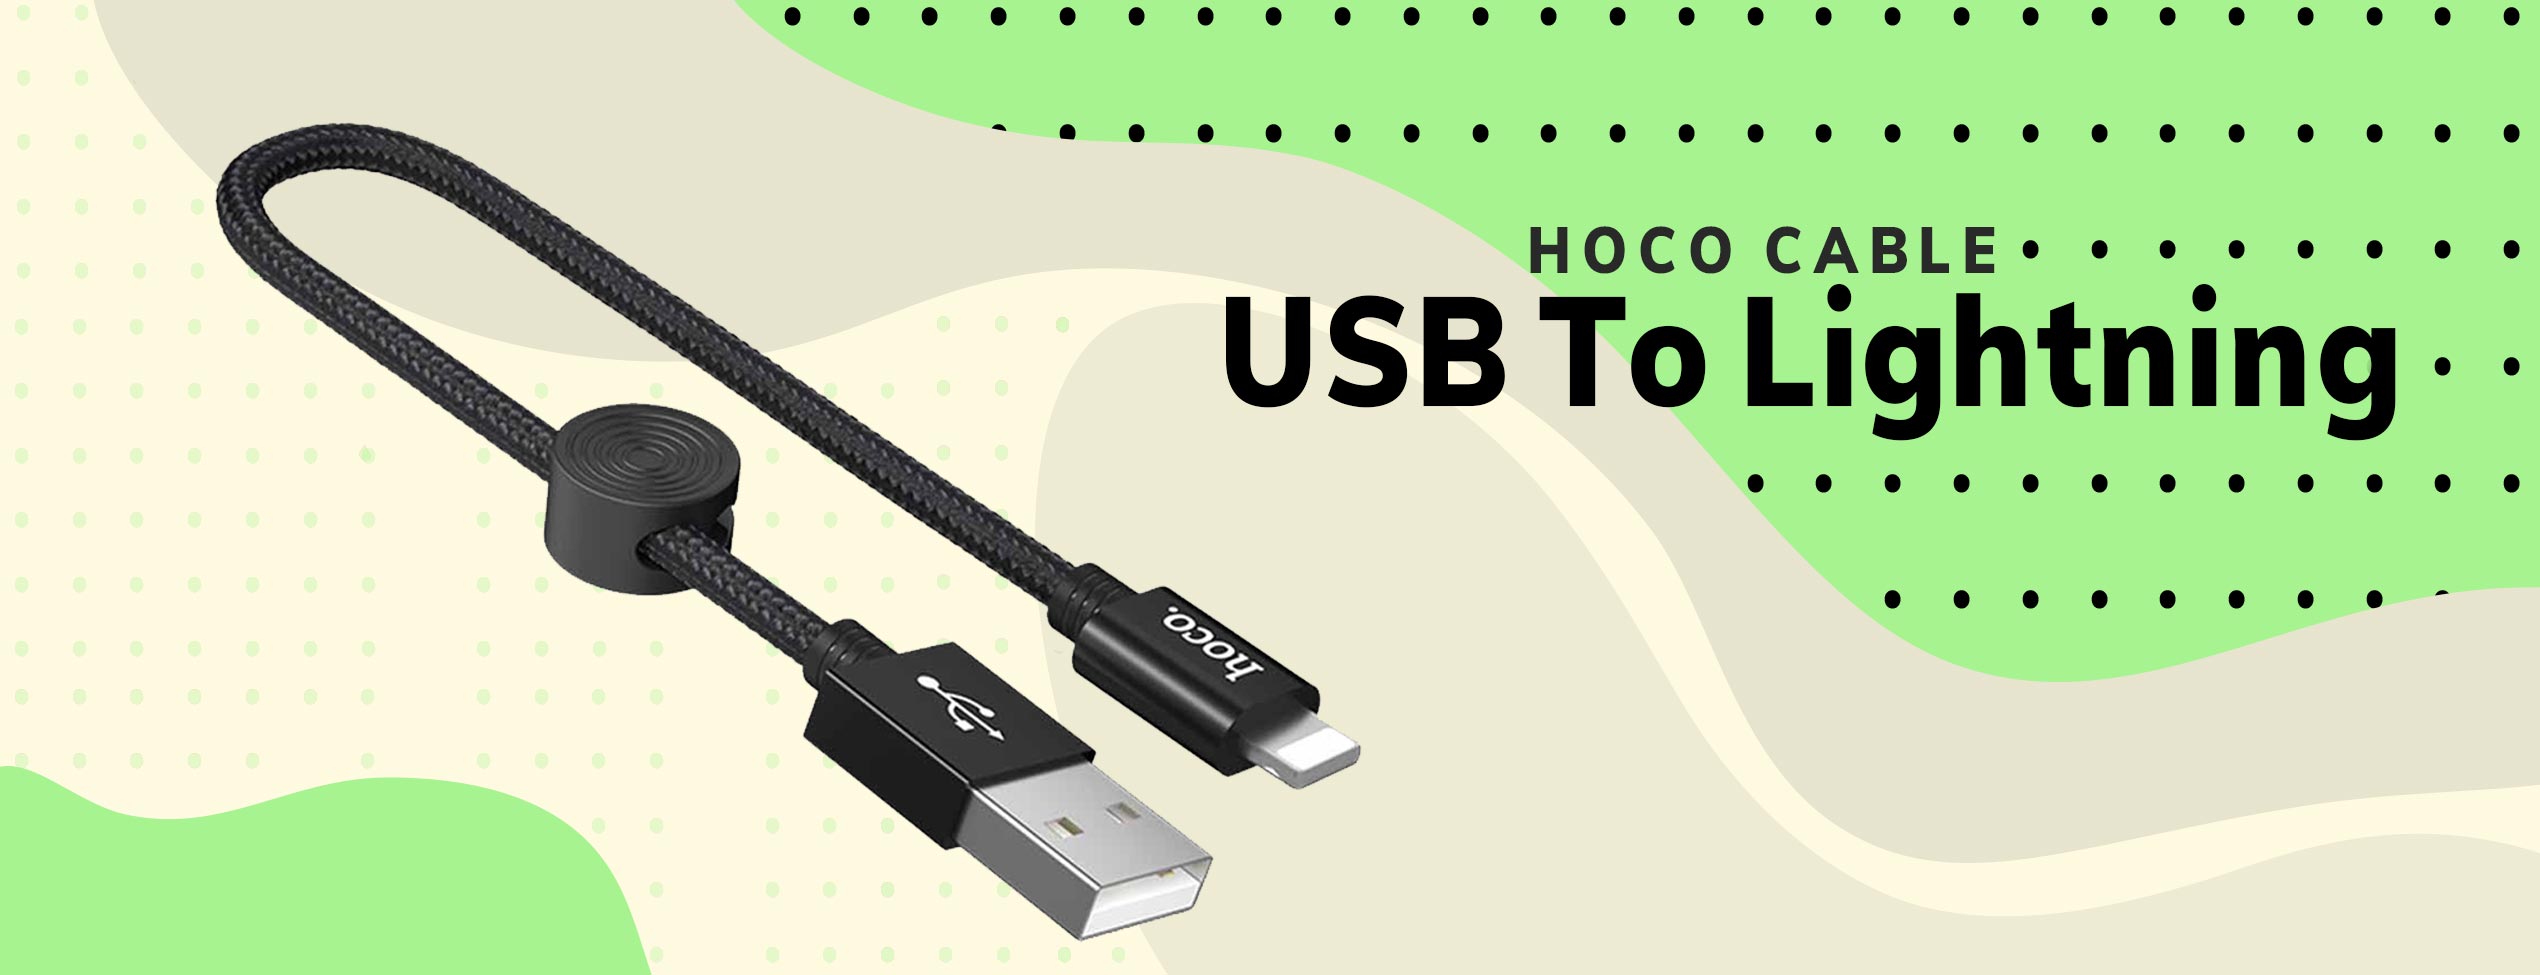 کابل تبدیل USB به Lightning هوکو X35